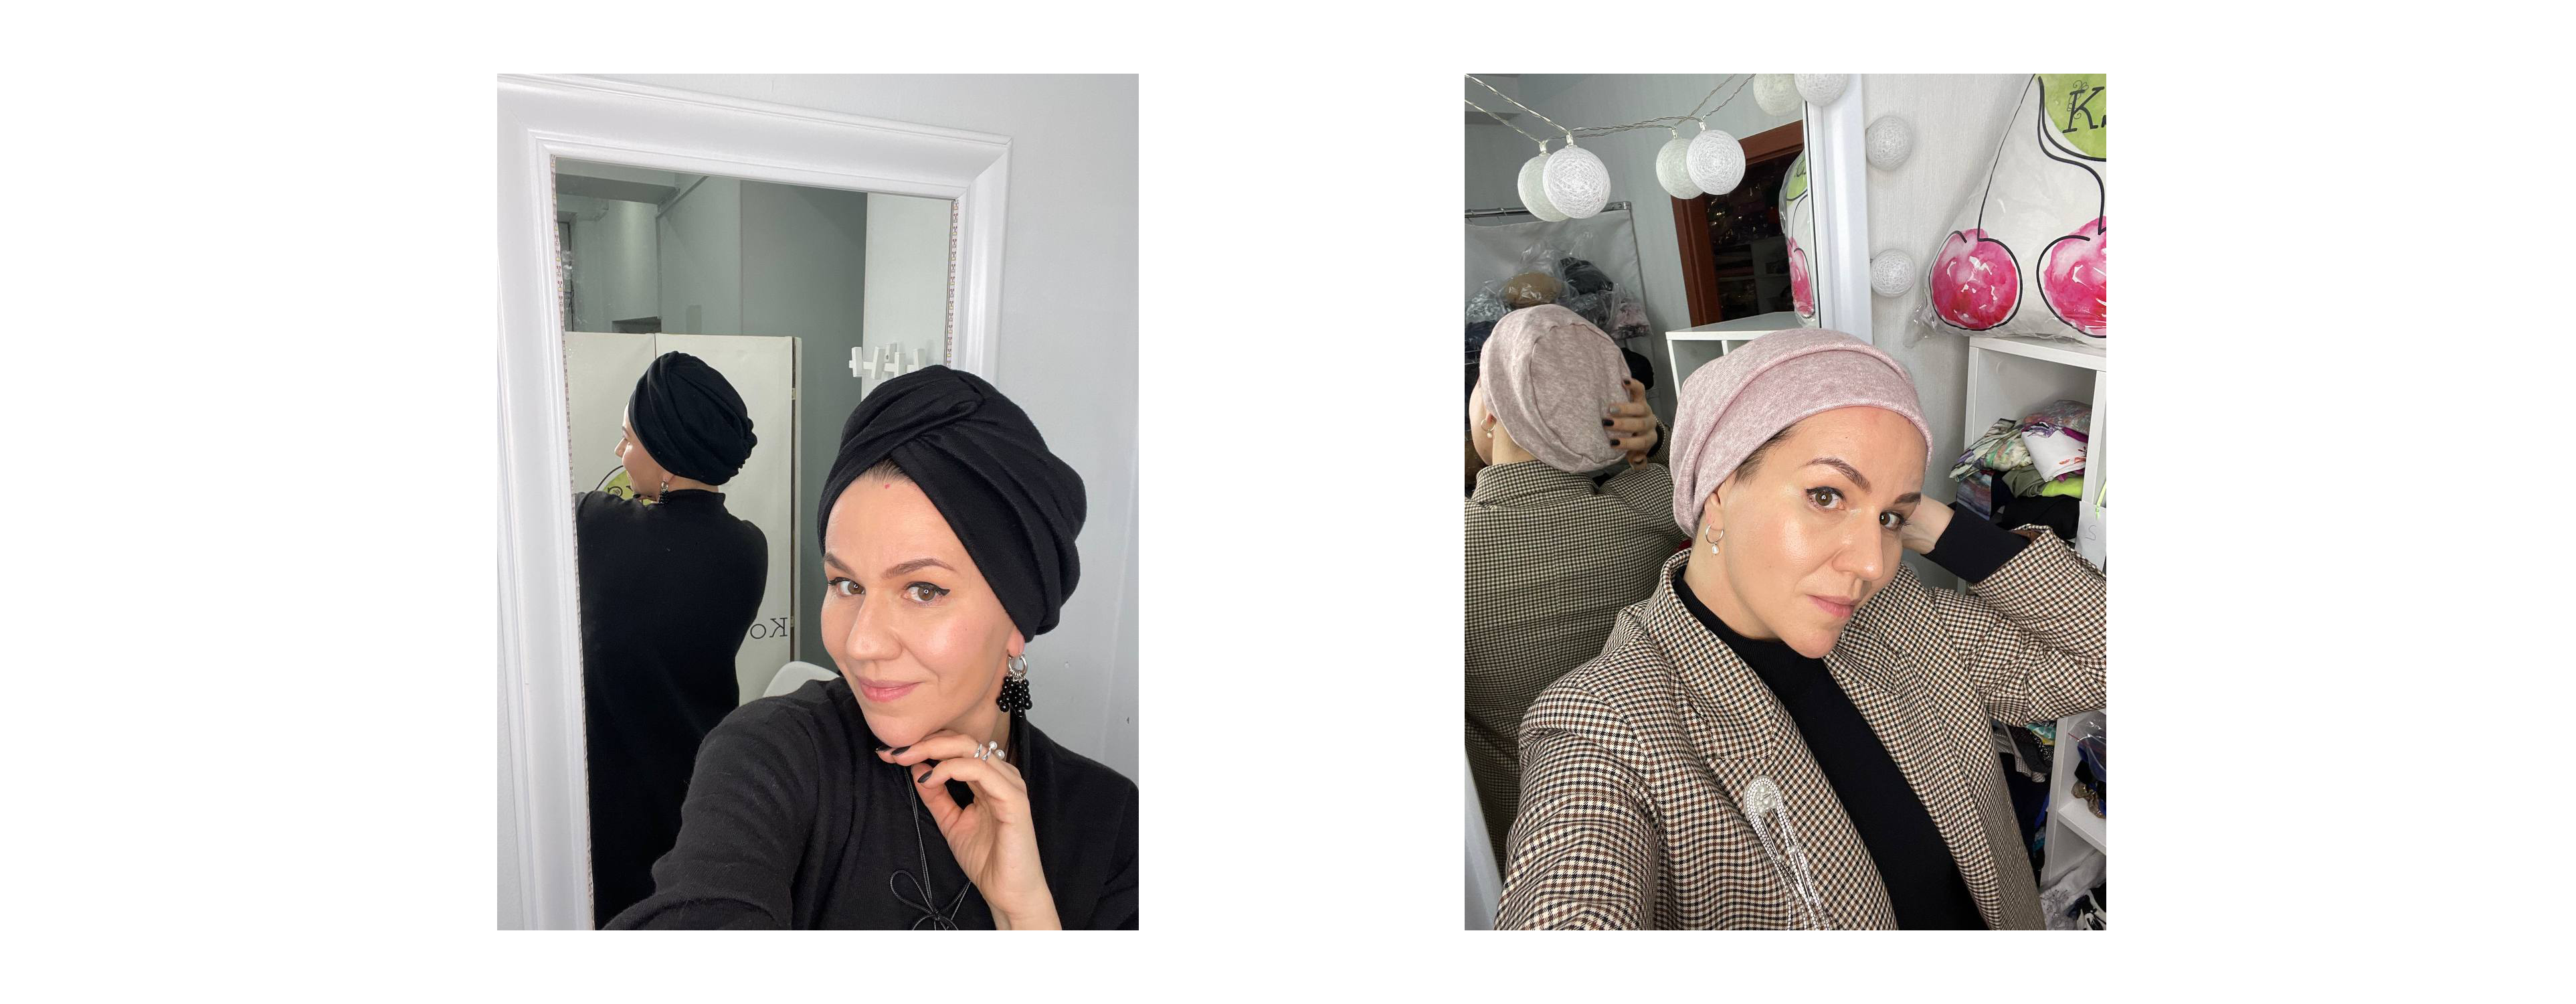 Теплые женские шапки Ангора от украинского бренда Kosher Style